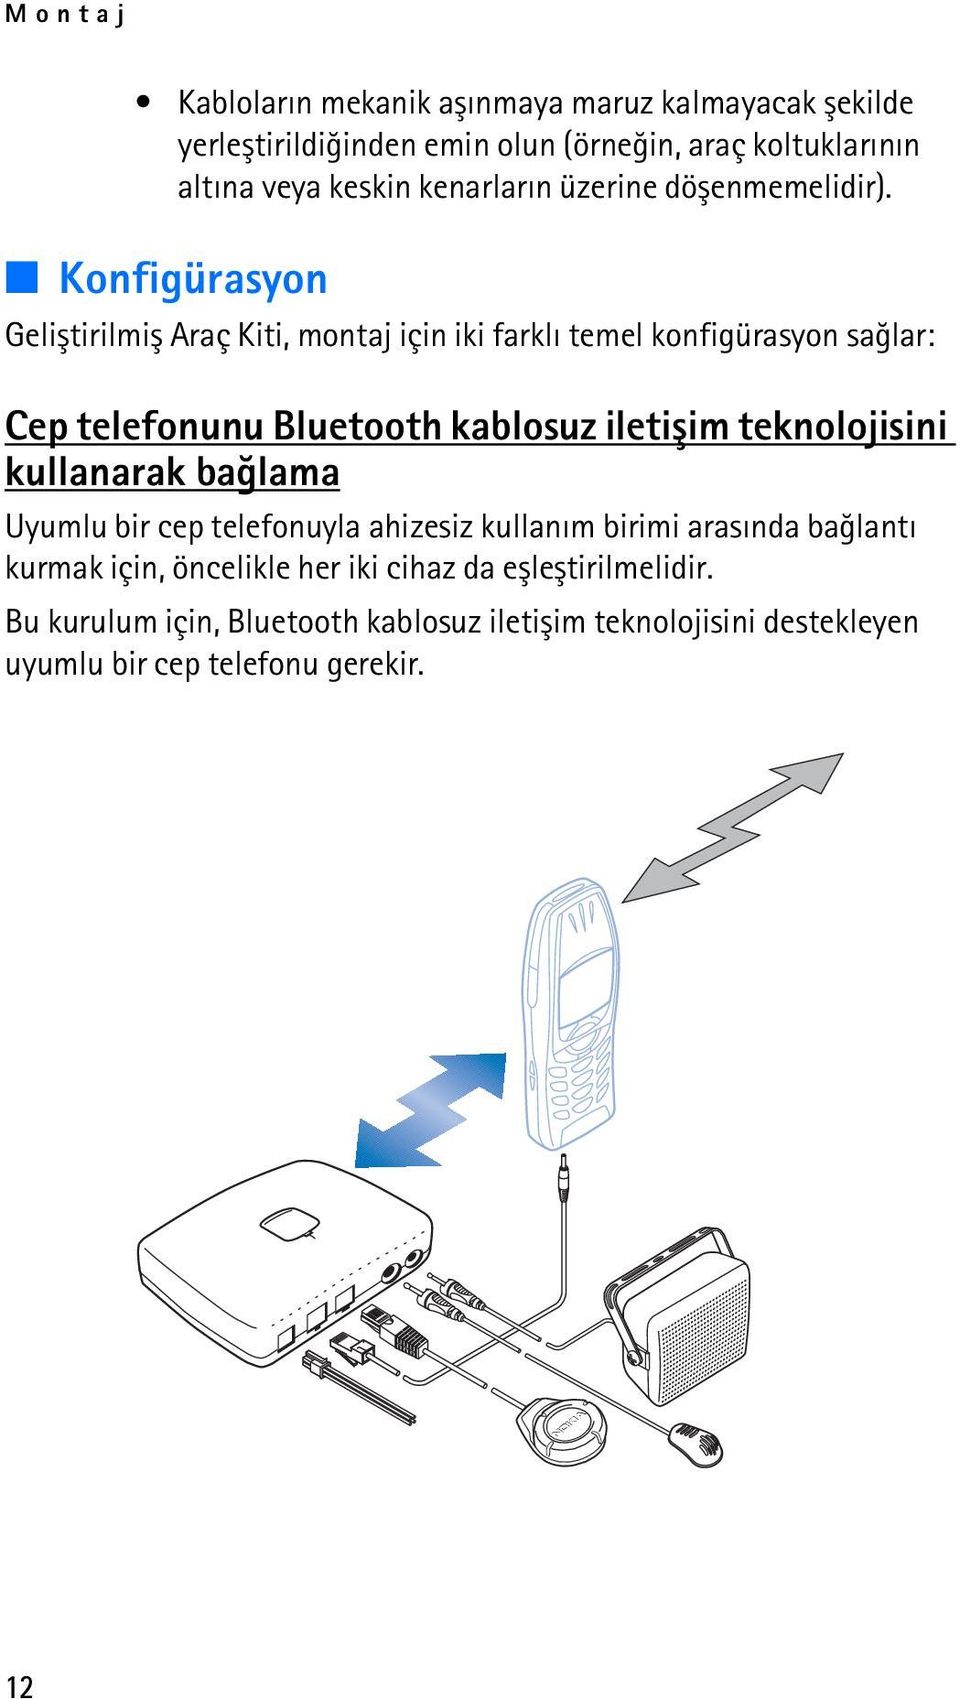 Konfigürasyon Geliþtirilmiþ Araç Kiti, montaj için iki farklý temel konfigürasyon saðlar: Cep telefonunu Bluetooth kablosuz iletiþim